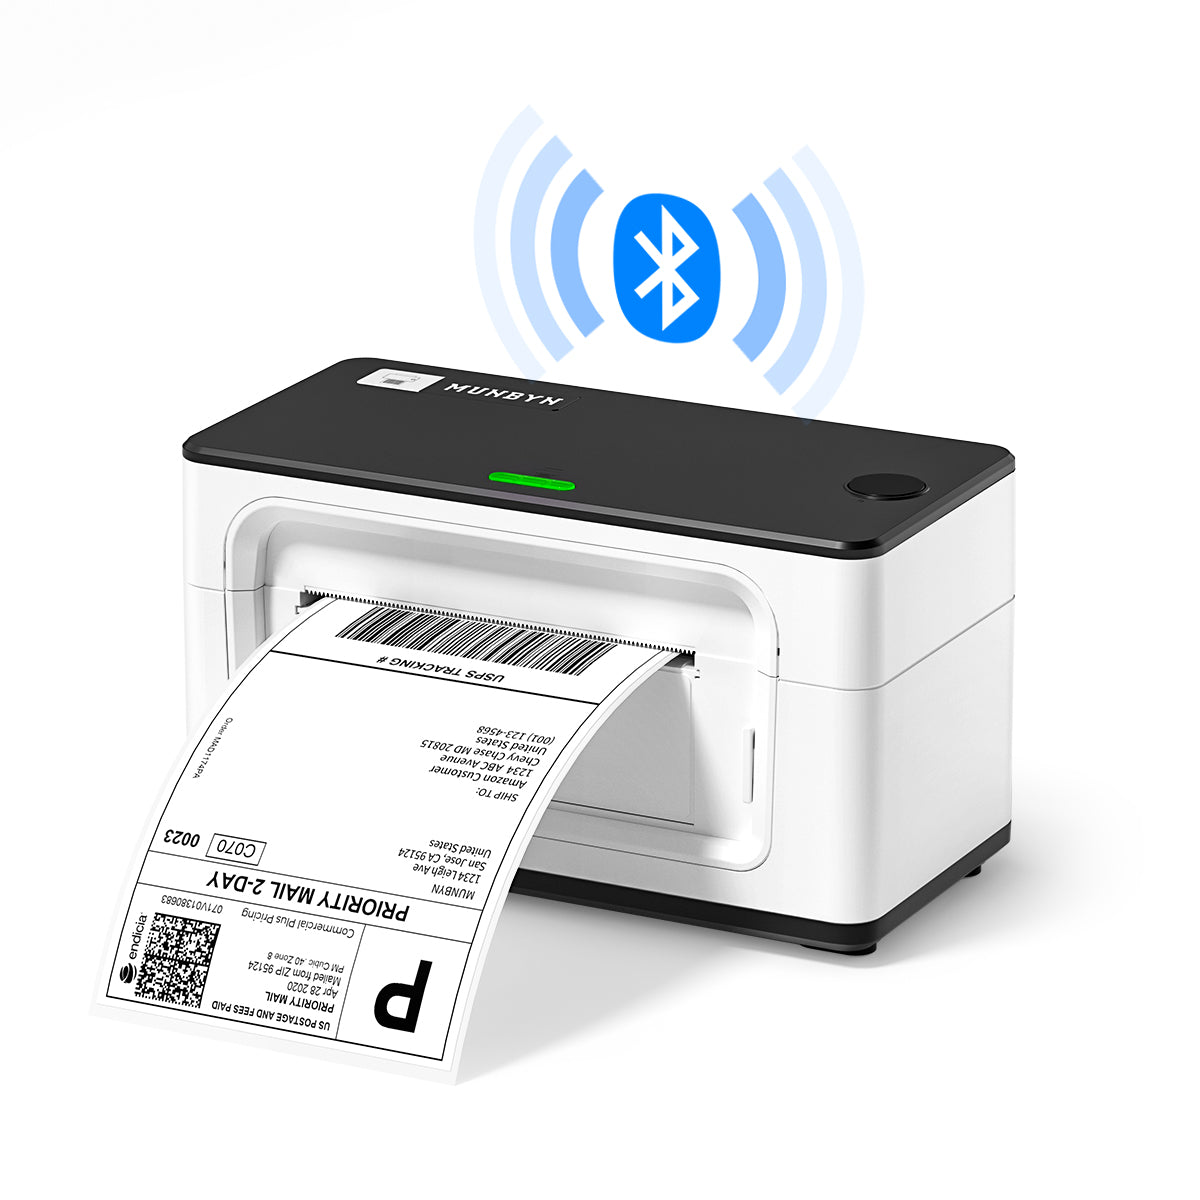 MUNBYN® RealWriter 941 Bluetooth Thermal Label Printer